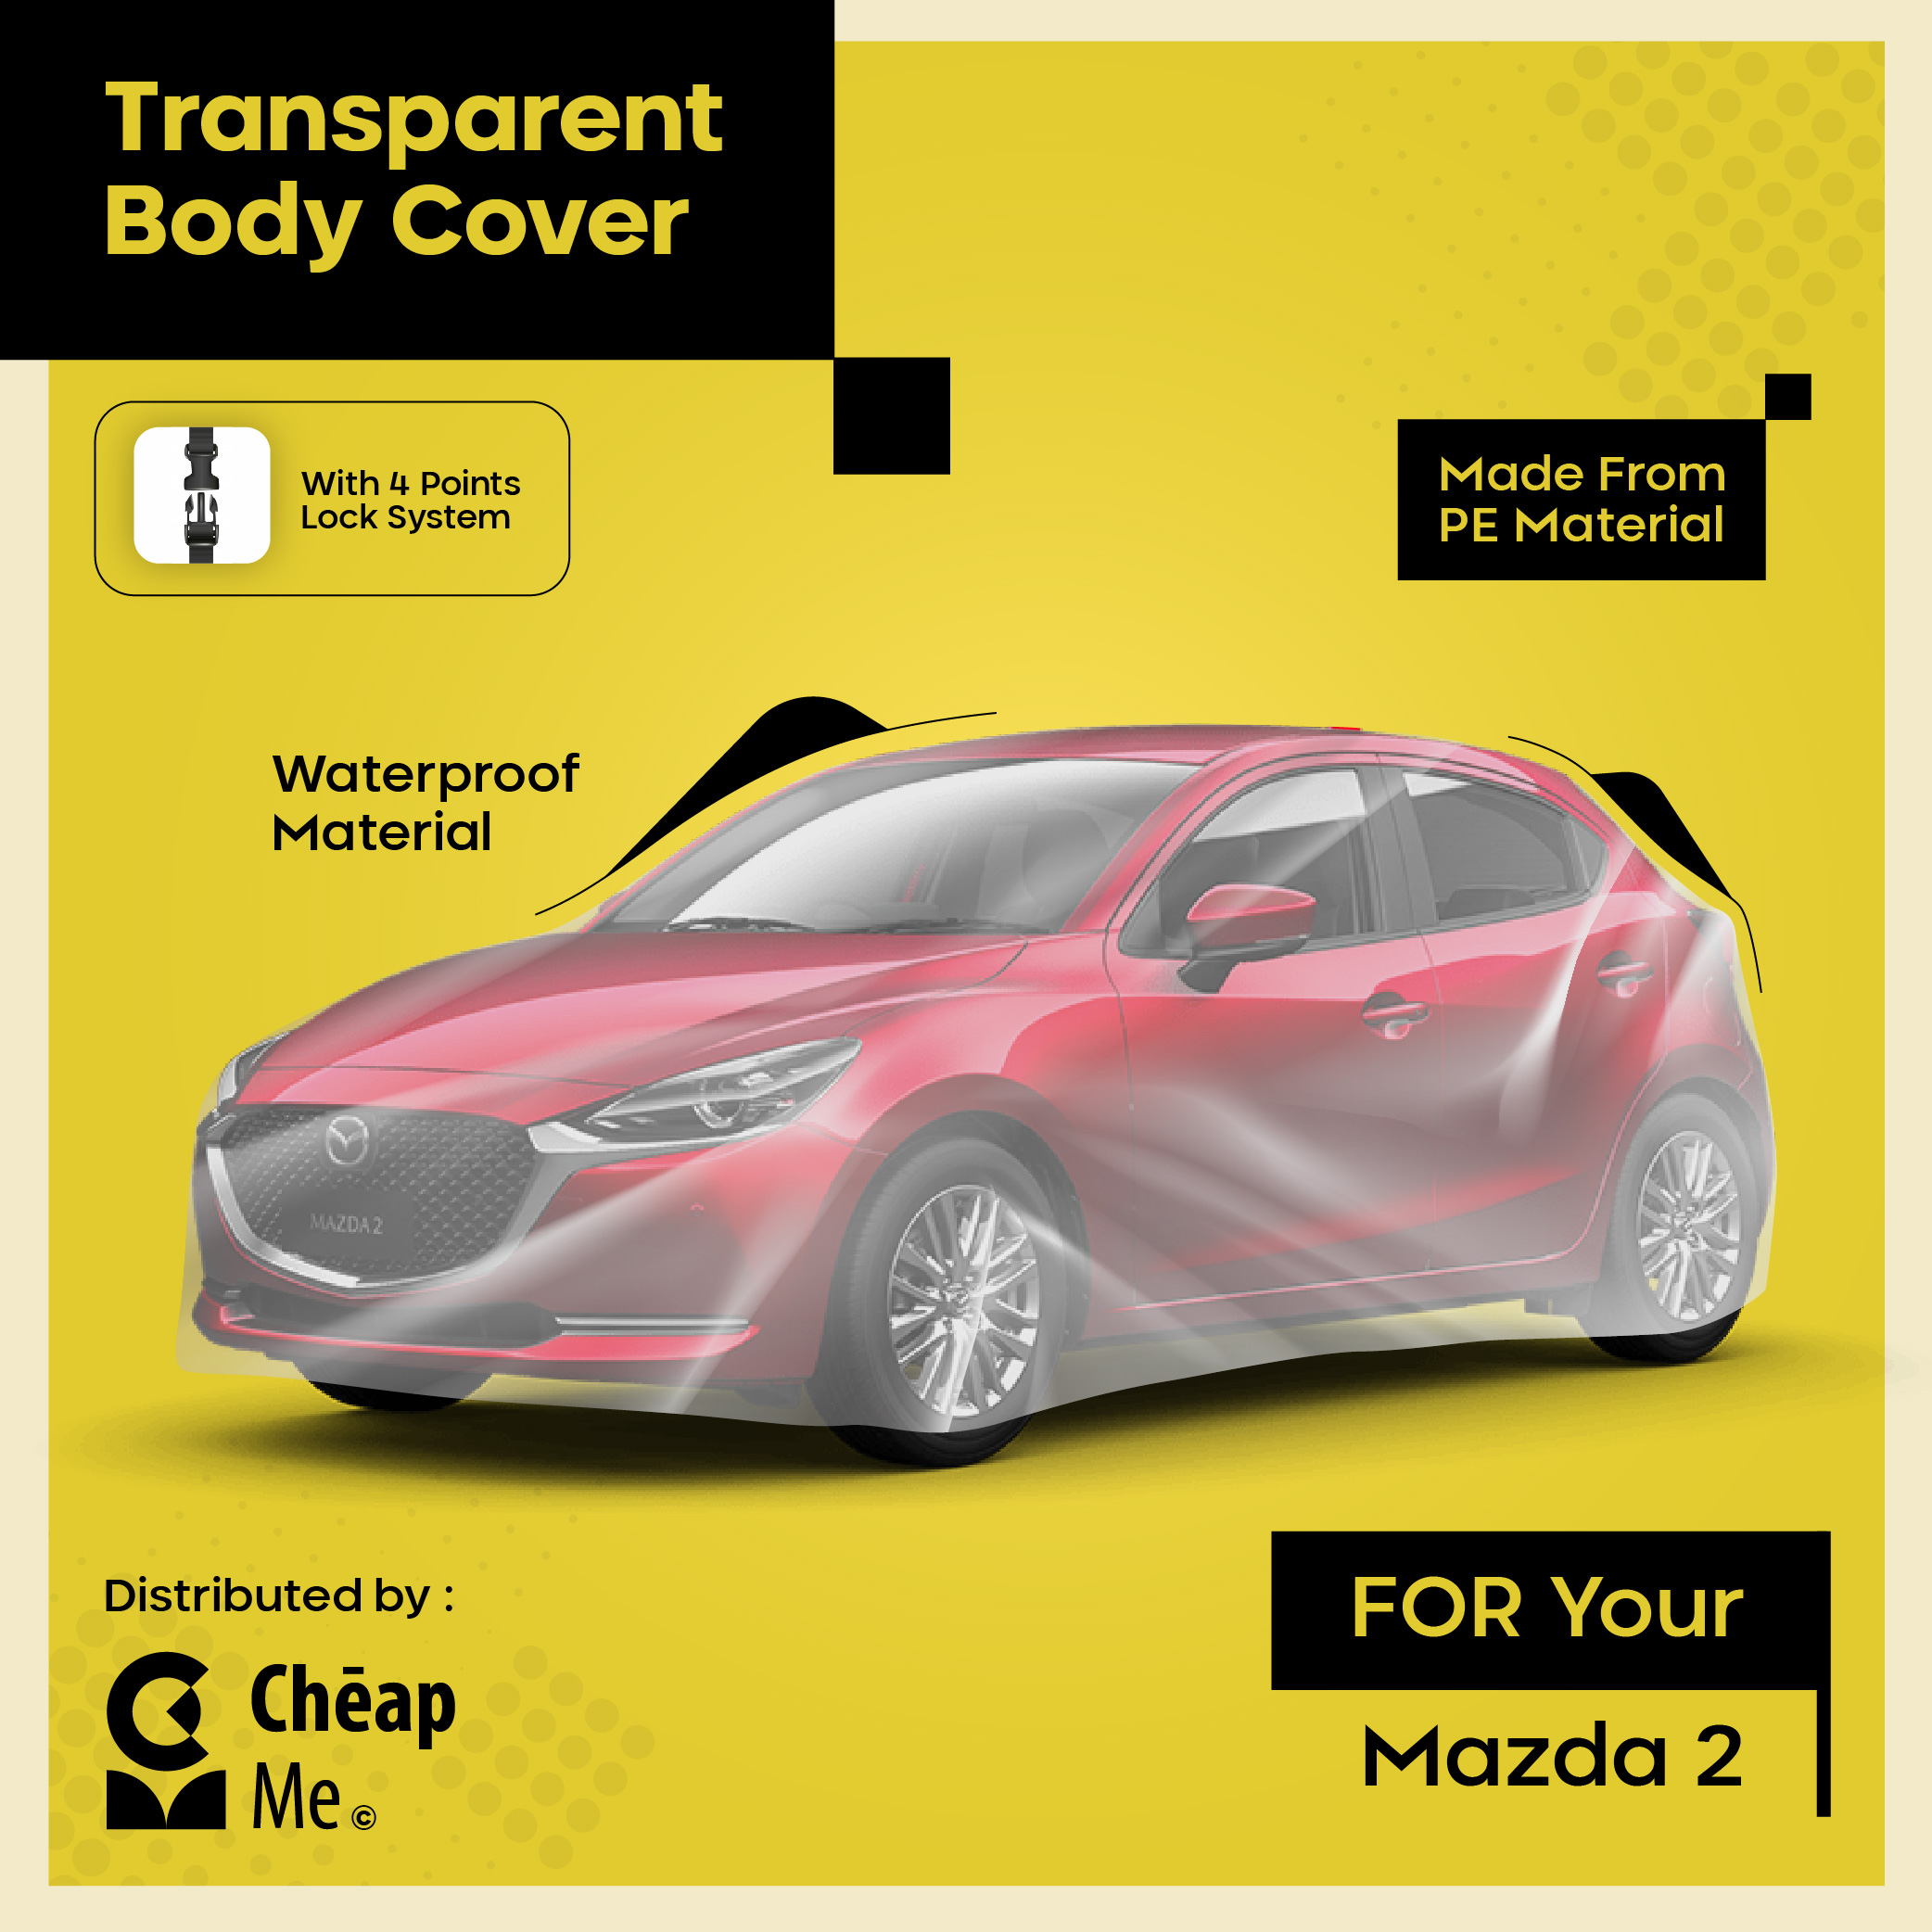 Sarung Mobil Mazda2 Cover Mobil Murah Body Cover Transparant TEBAL Car Cover WATERPROOF Mazda 2